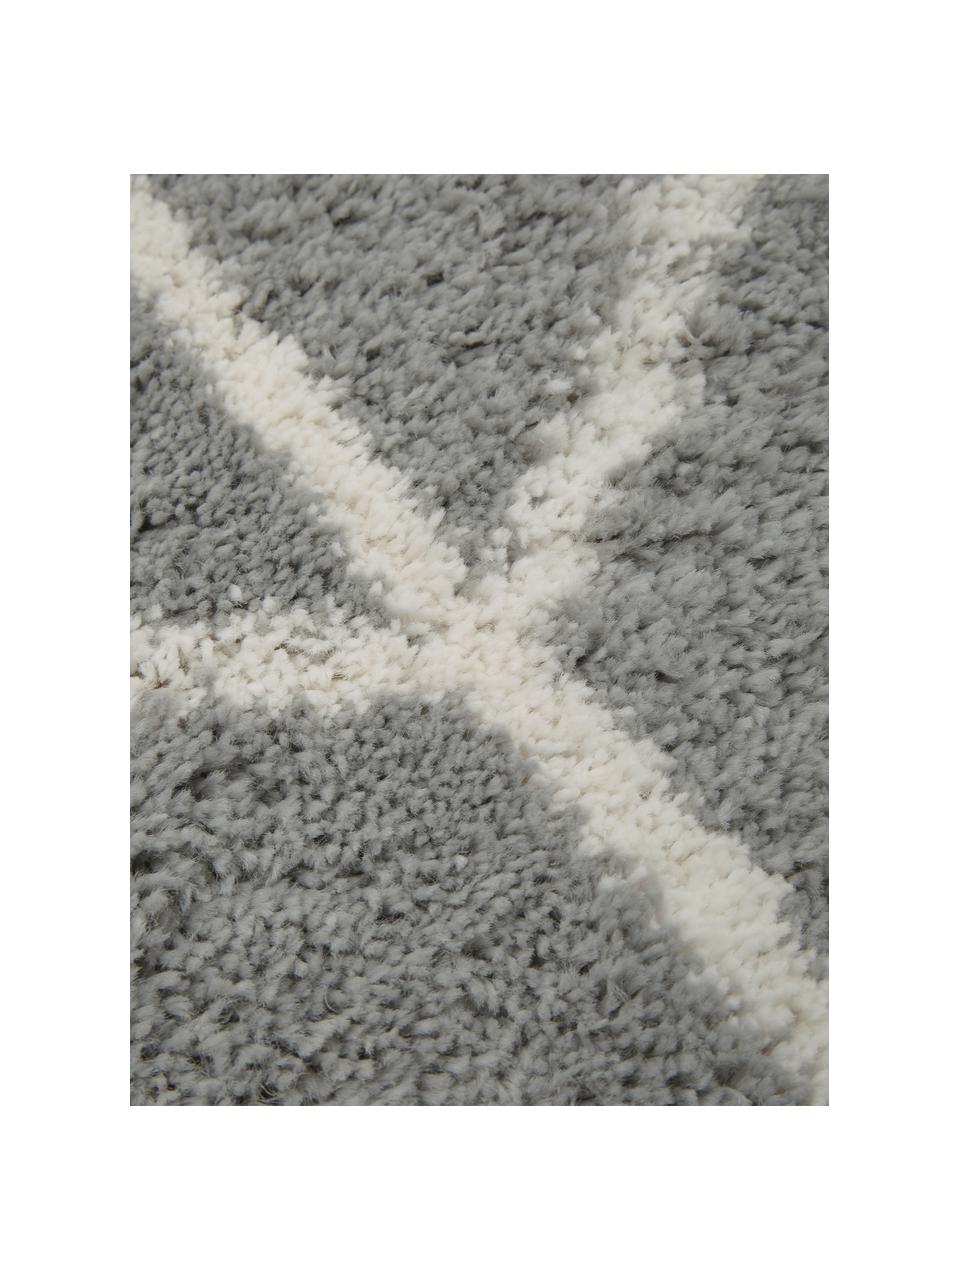 Hochflor-Teppich Cera in Grau/Creme, Flor: 100% Polypropylen, Grau, Cremeweiß, B 120 x L 180 cm (Größe S)